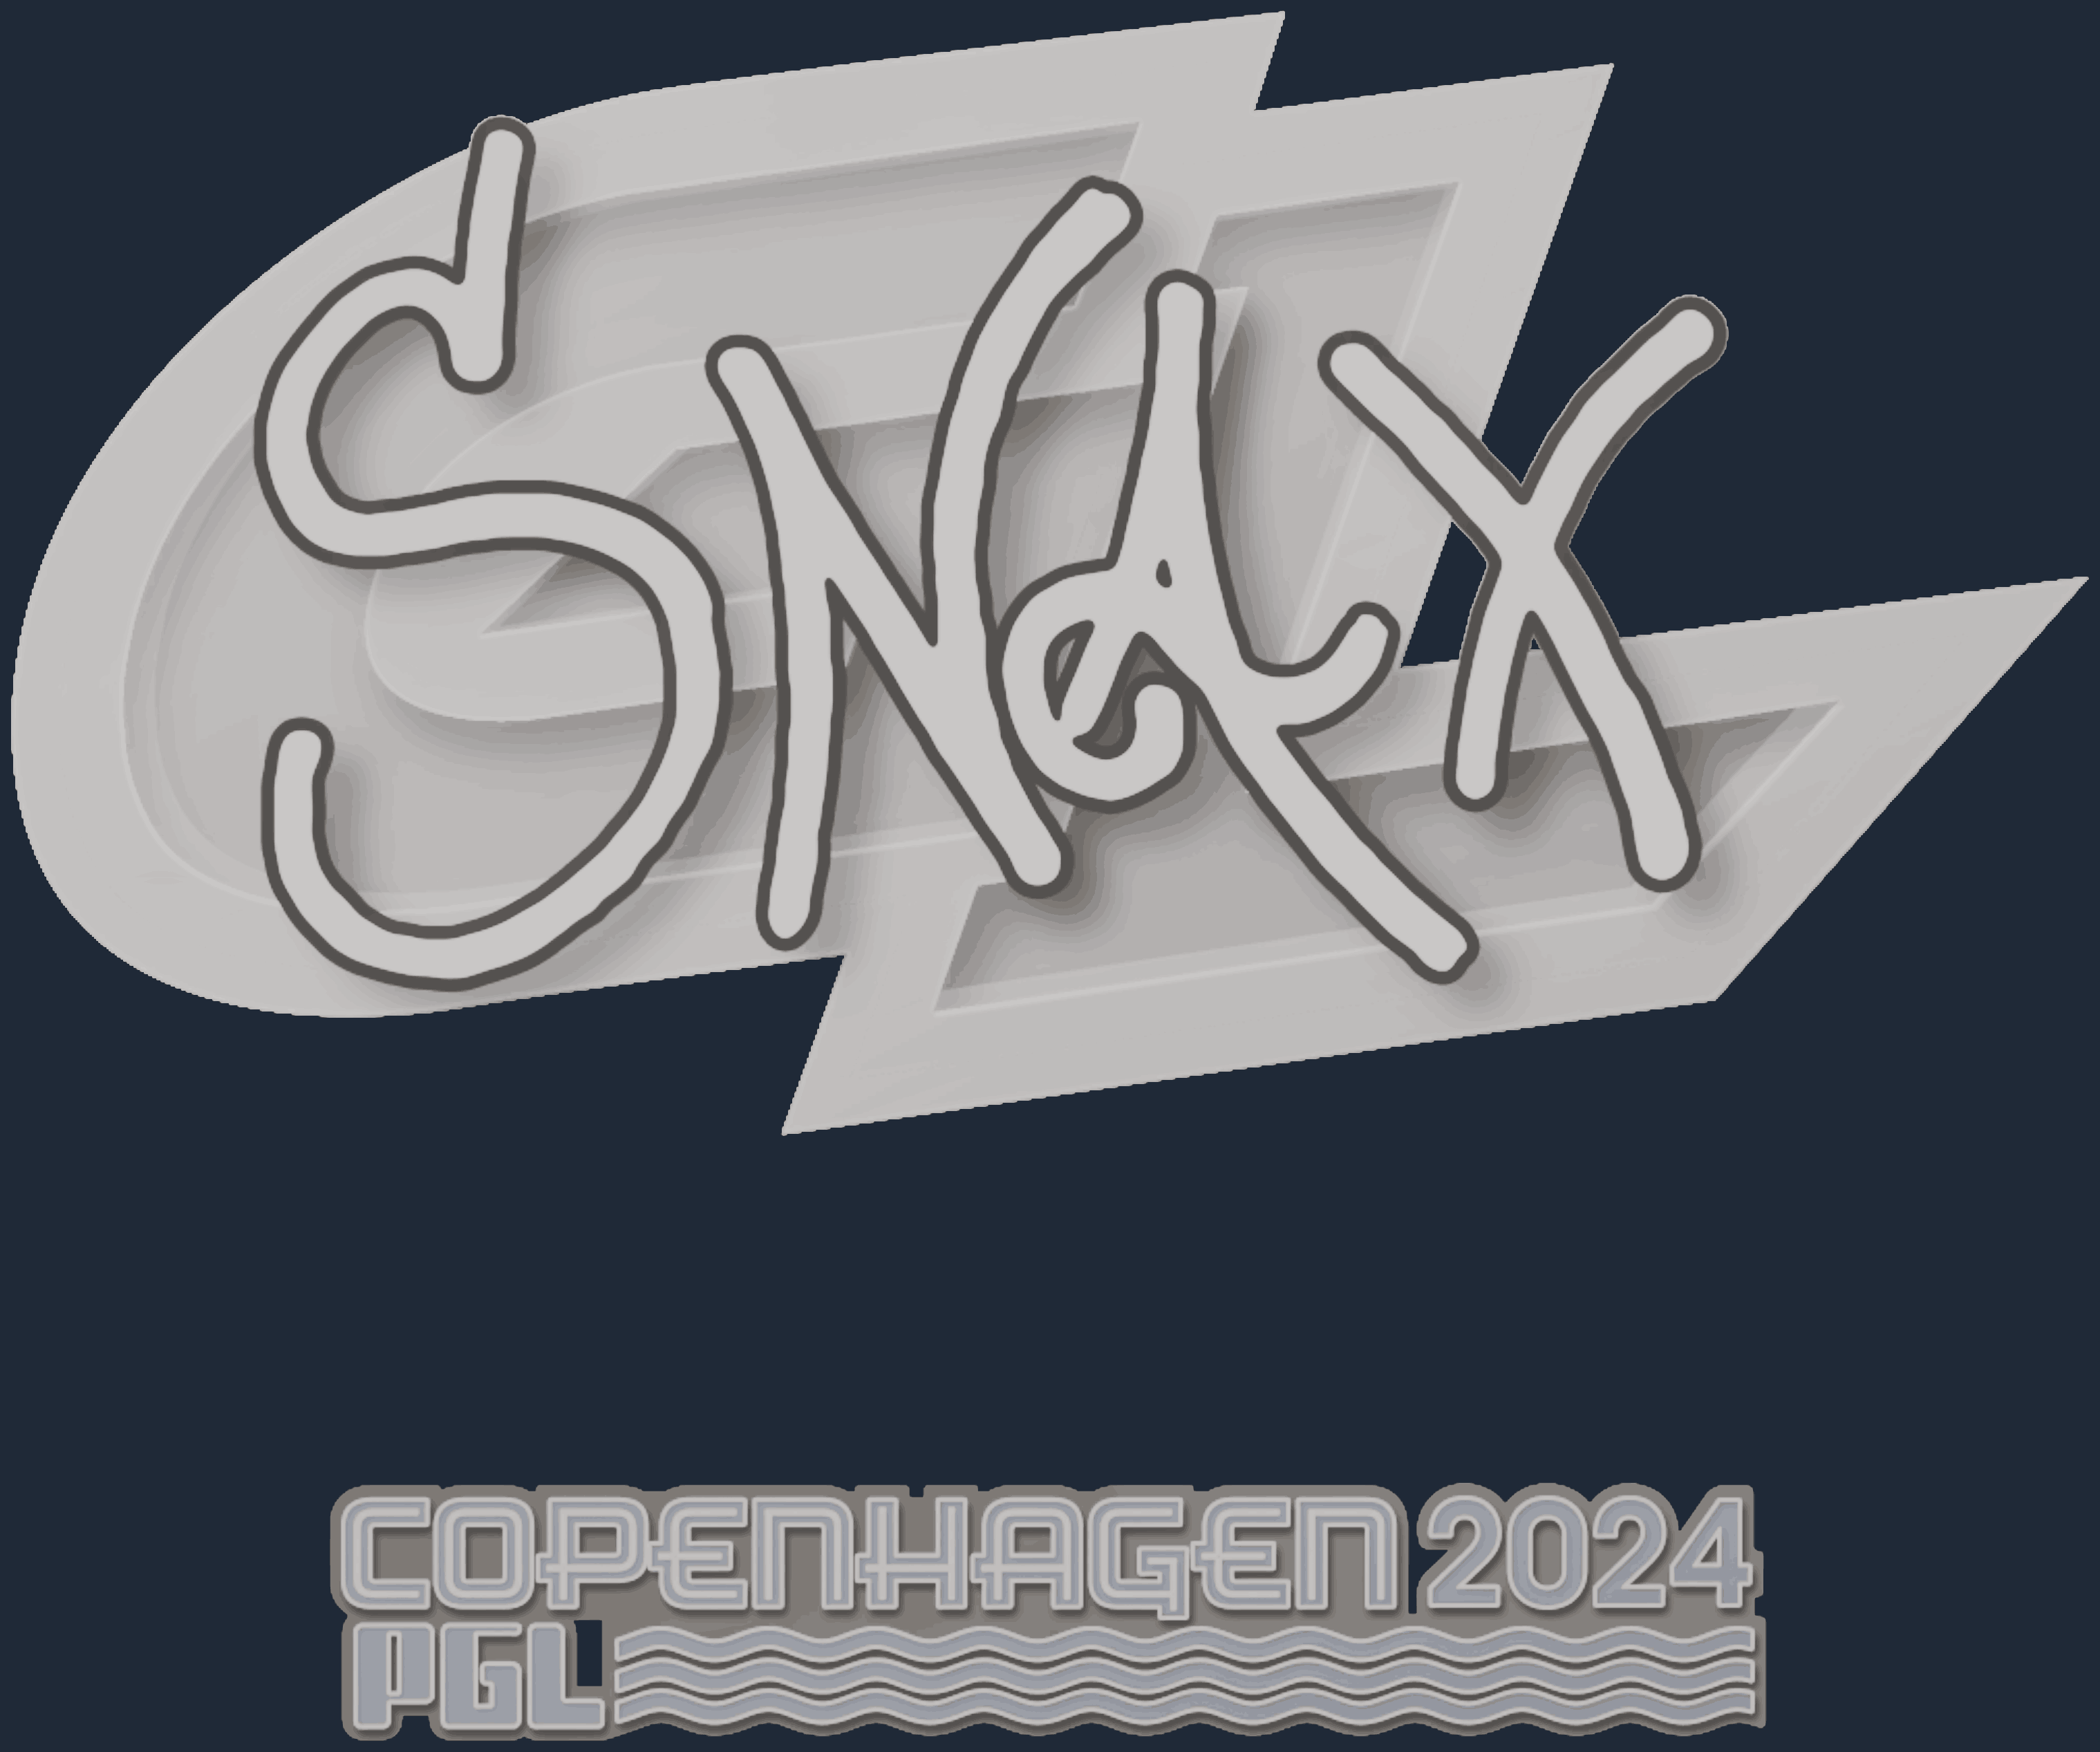 Sticker | Snax | Copenhagen 2024 Screenshot